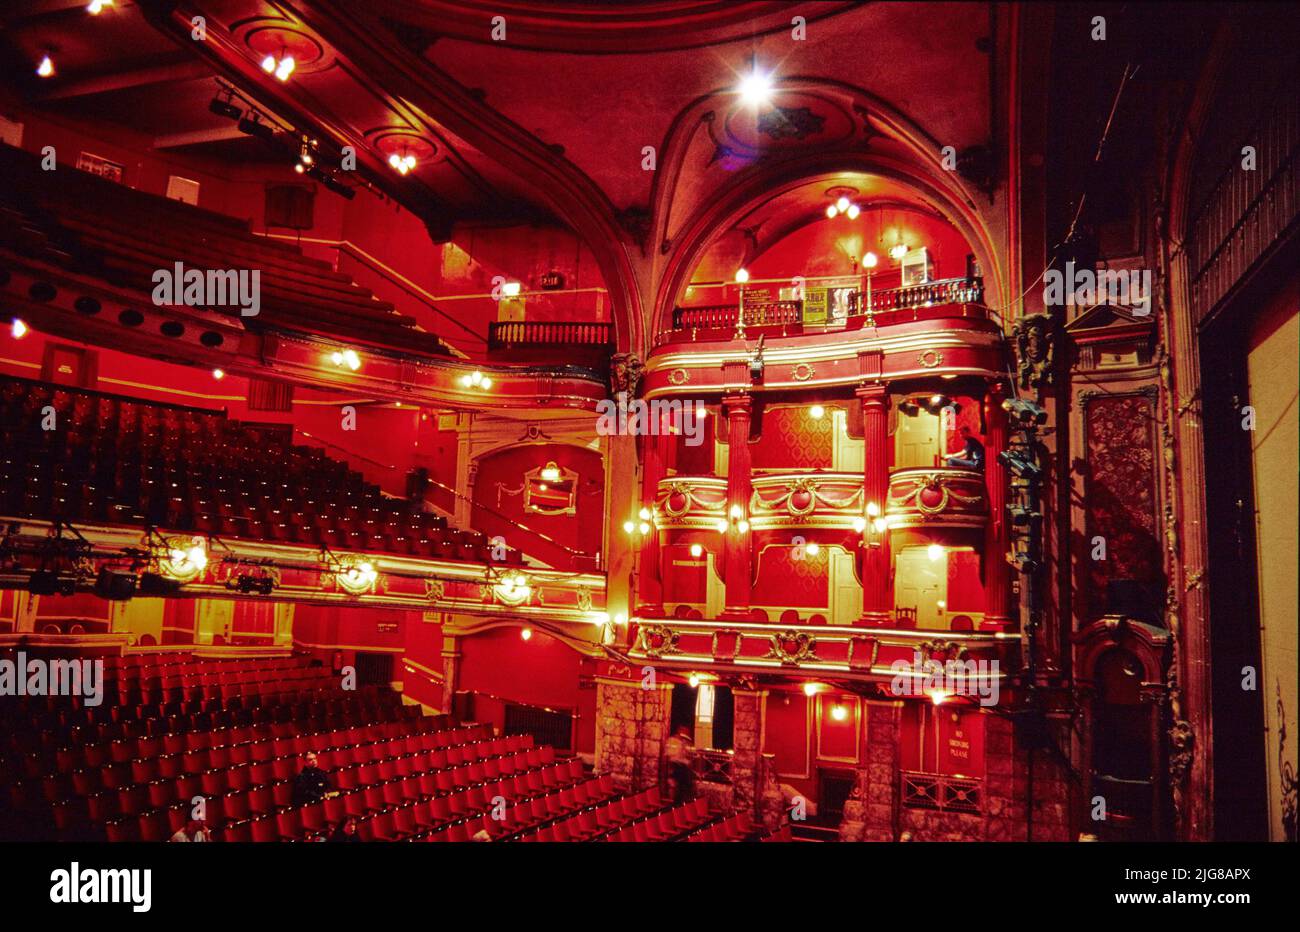 Bristol Hippodrome Theatre, St Augustine's Parade, Bristol, ville de Bristol, 1970 - 2015. L'auditorium du Bristol Hippodrome Theatre. Le Bristol Hippodrome Theatre a ouvert ses portes en 1912. L'auditorium est en grande partie intact malgré les dégâts causés par le feu en 1940s. Banque D'Images